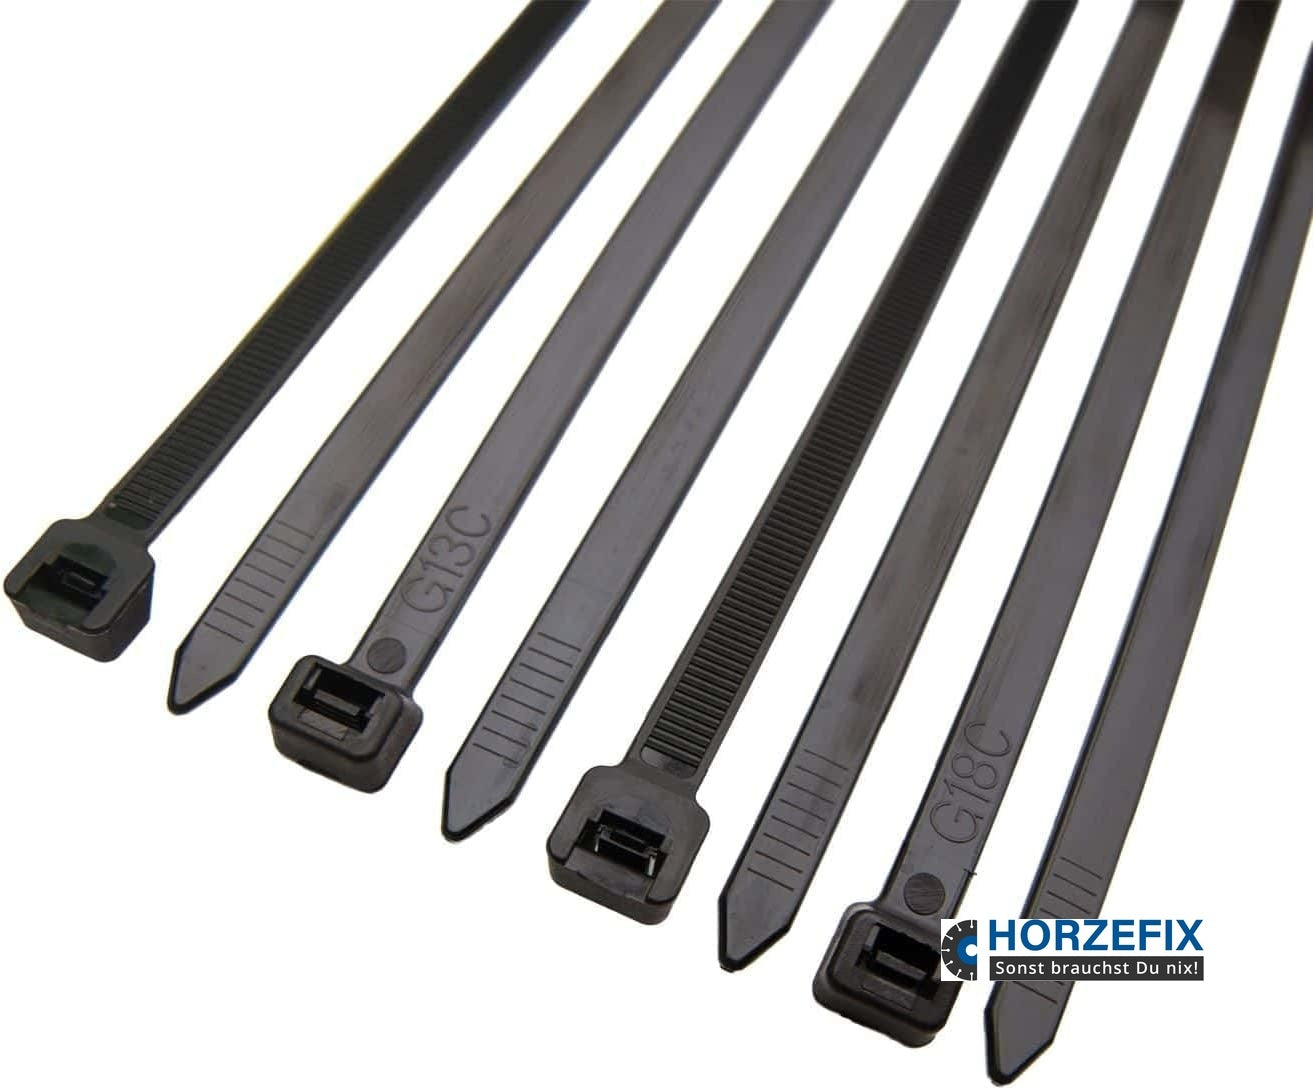 Elektroinstallation Kabelbinder Set Kabelbinder Uv Beständig 500 Stück  Schwarz,5 Größen: 100/150 / 200/250 / 300 mm